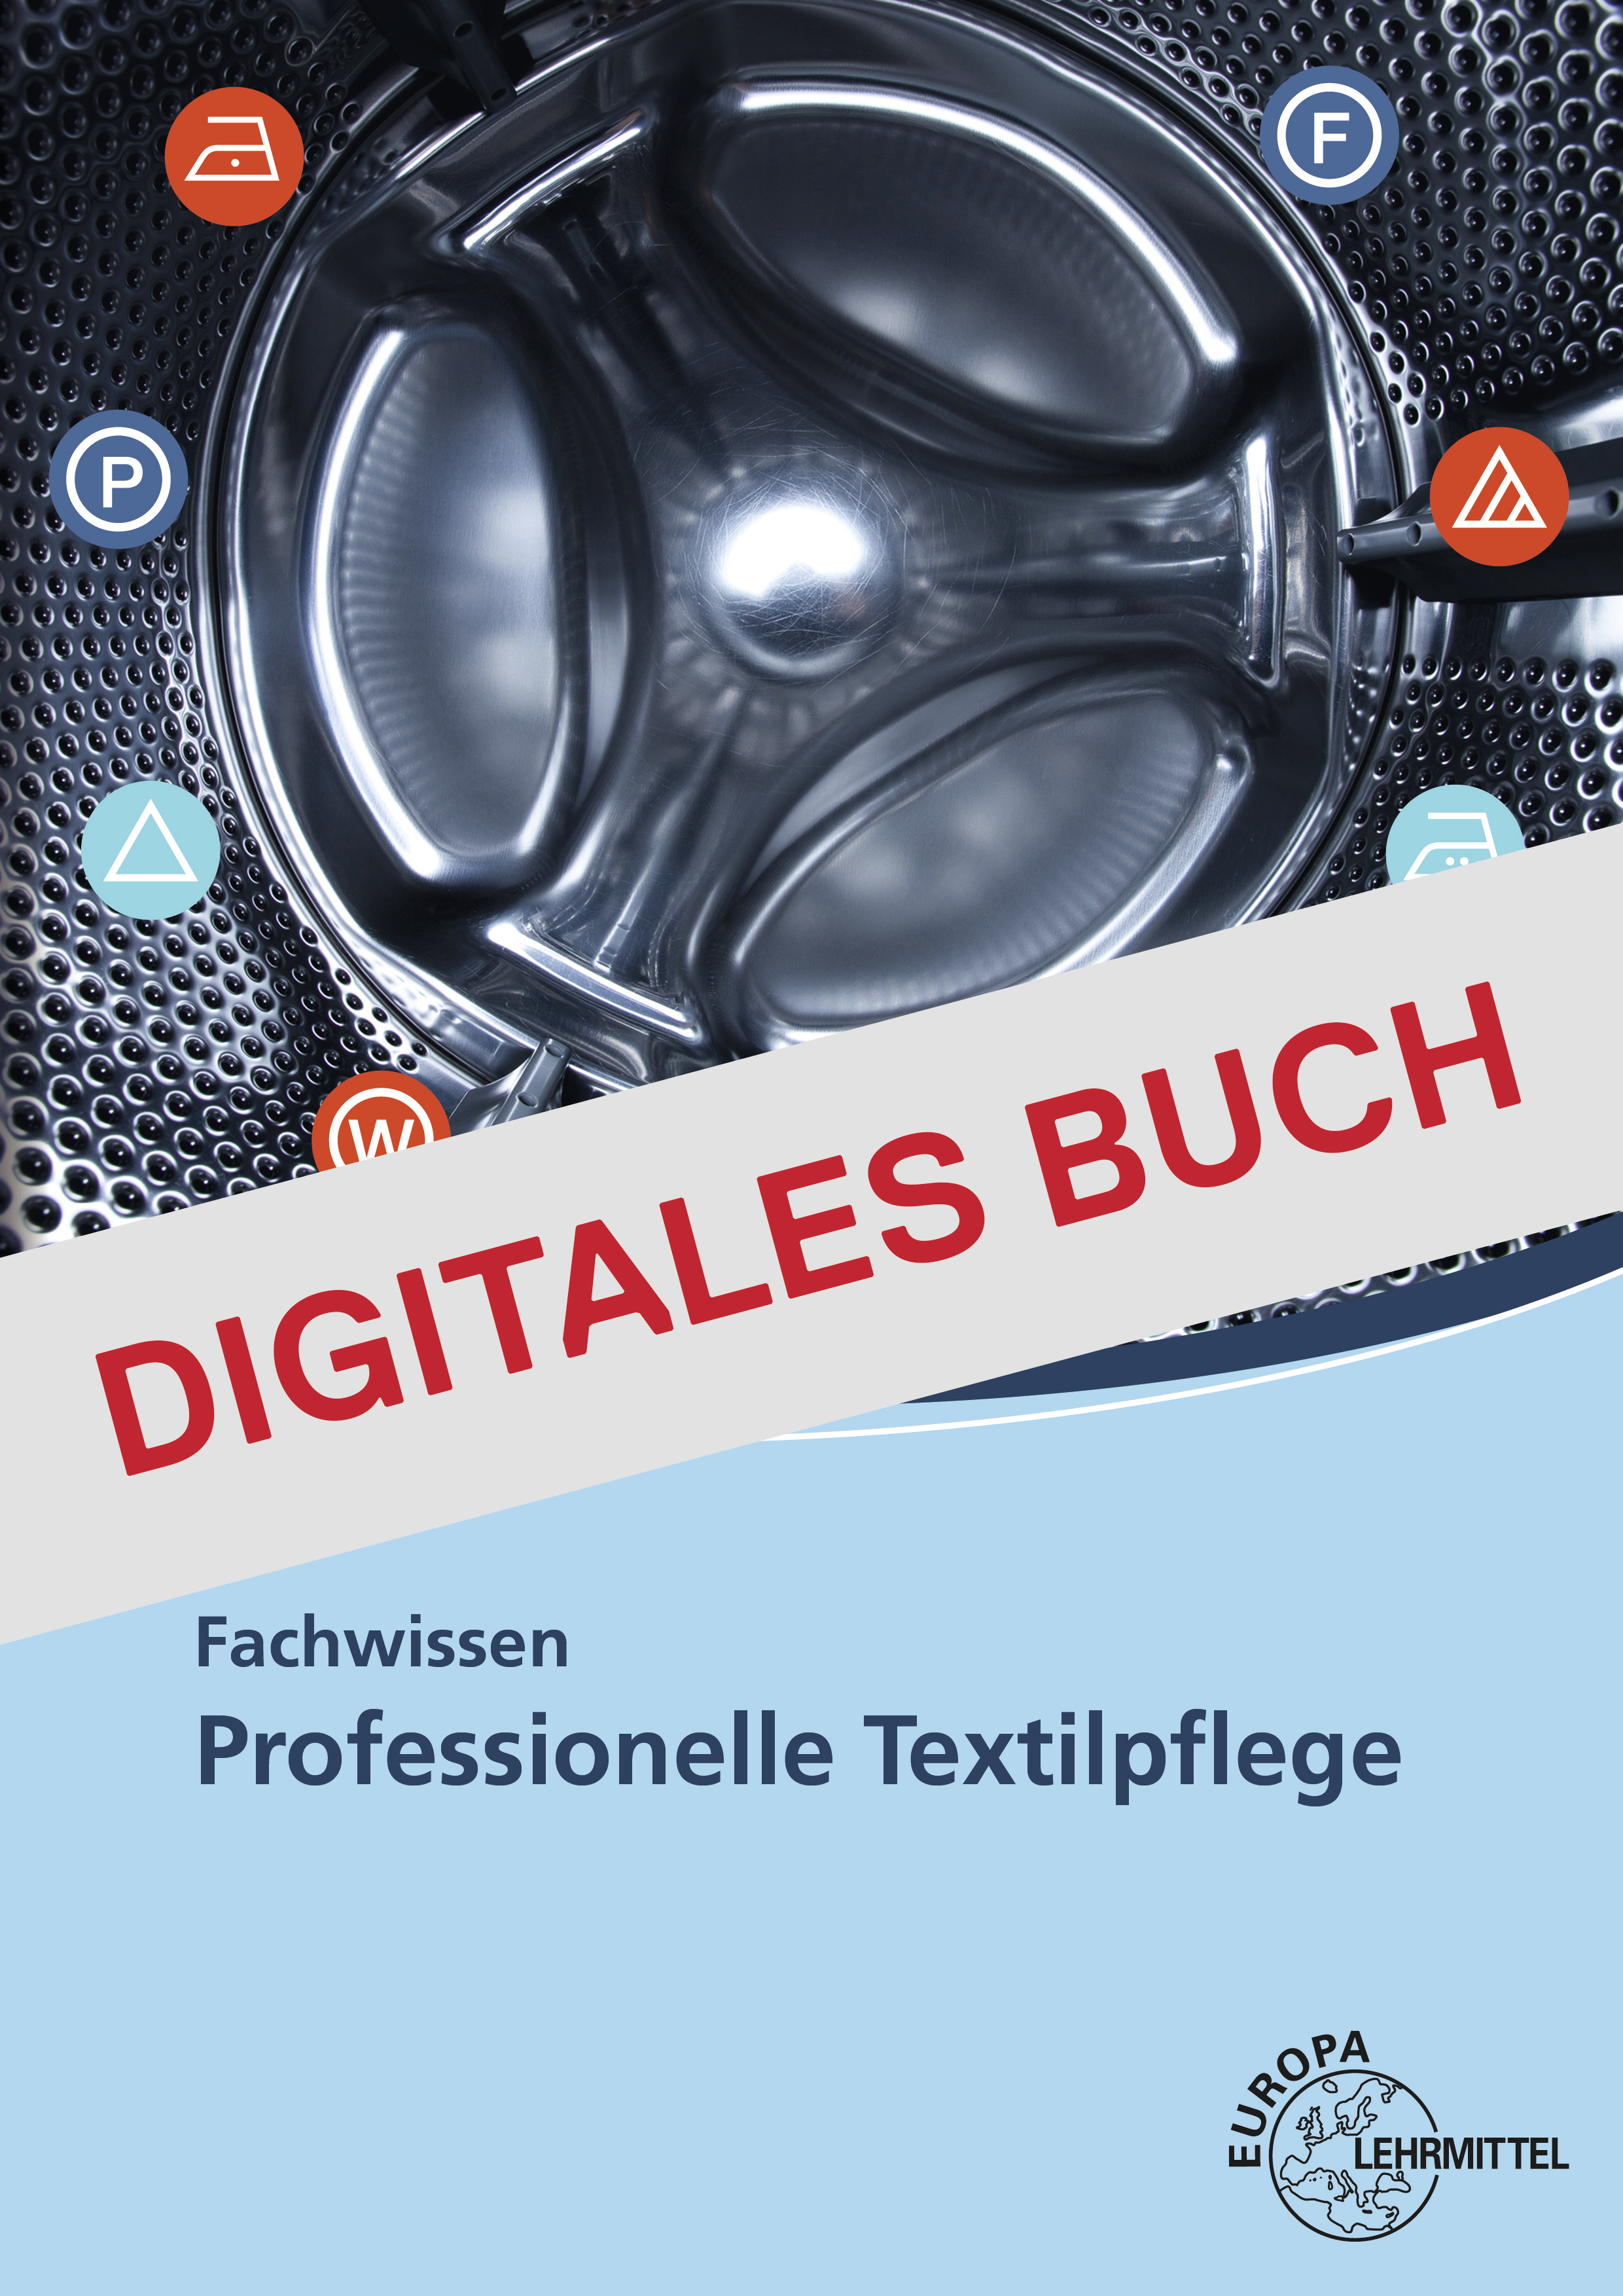 Fachwissen Professionelle Textilpflege - Digitales Buch